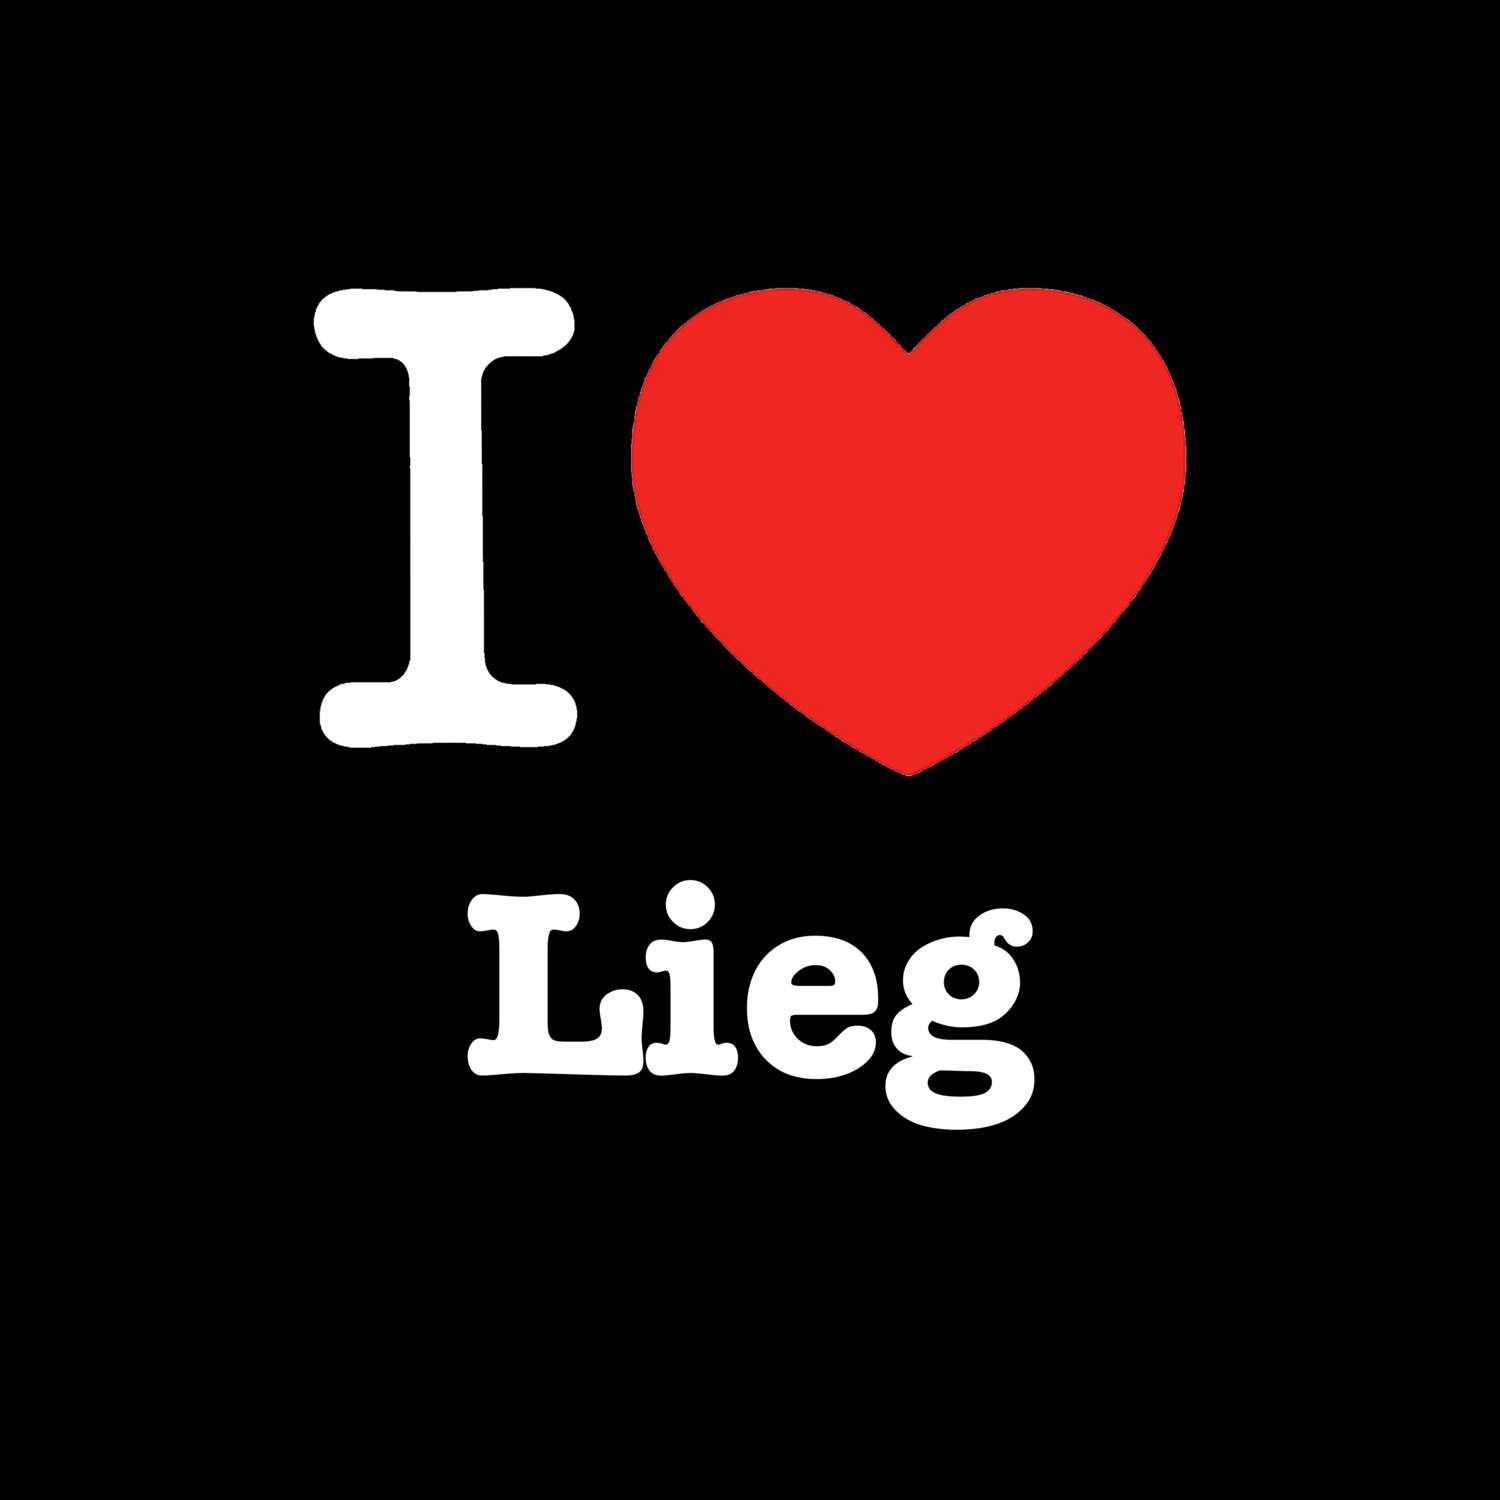 Lieg T-Shirt »I love«